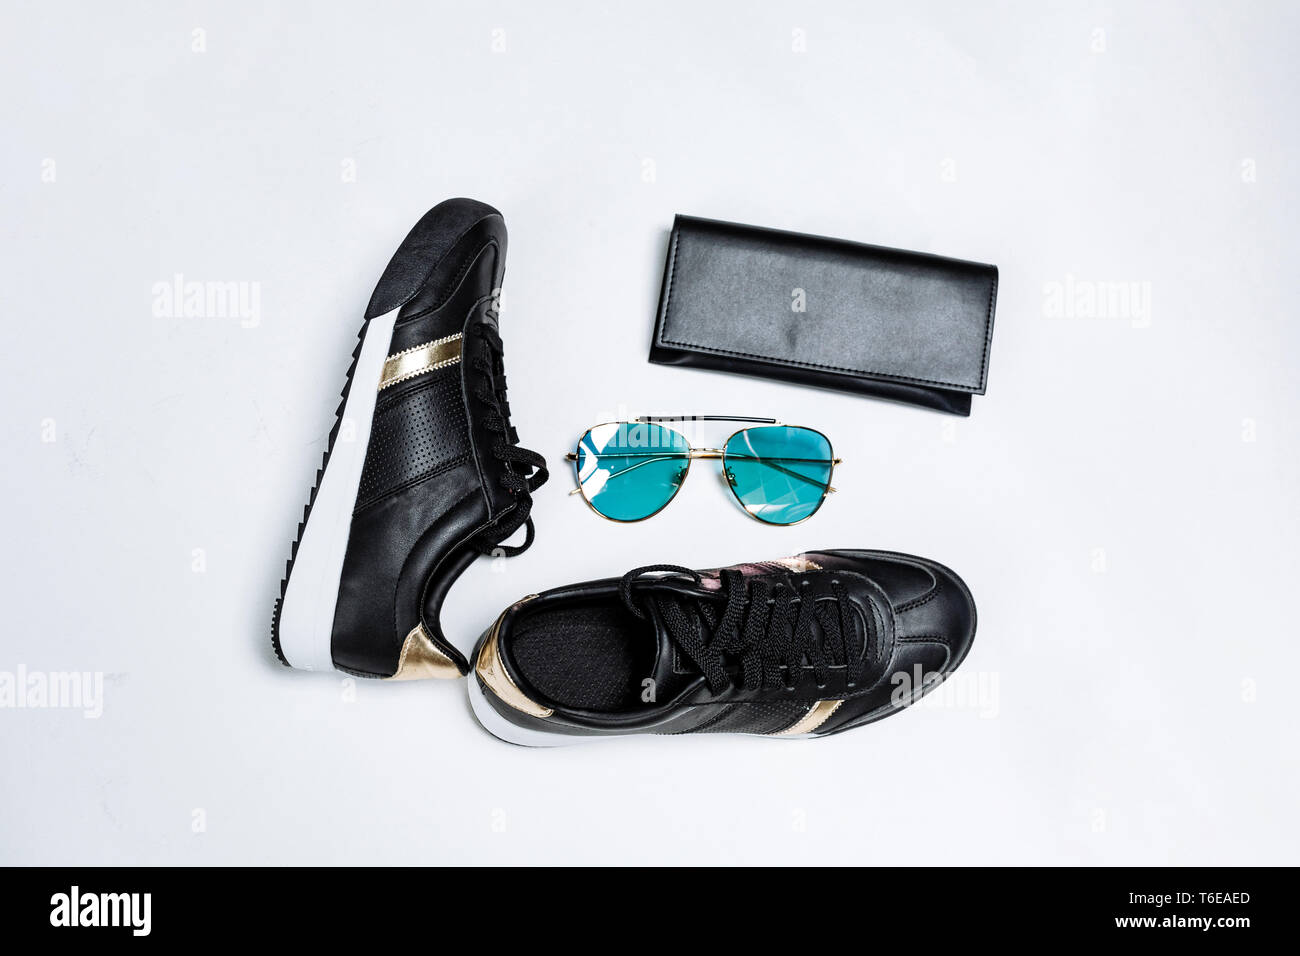 Modische schwarze Sneakers auf eine weiße Sohle mit schwarzen Socken und goldenen Akzenten, Sonnenbrille mit blauen Gläsern und eine schwarze Geldbörse auf weißem Hintergrund Stockfoto